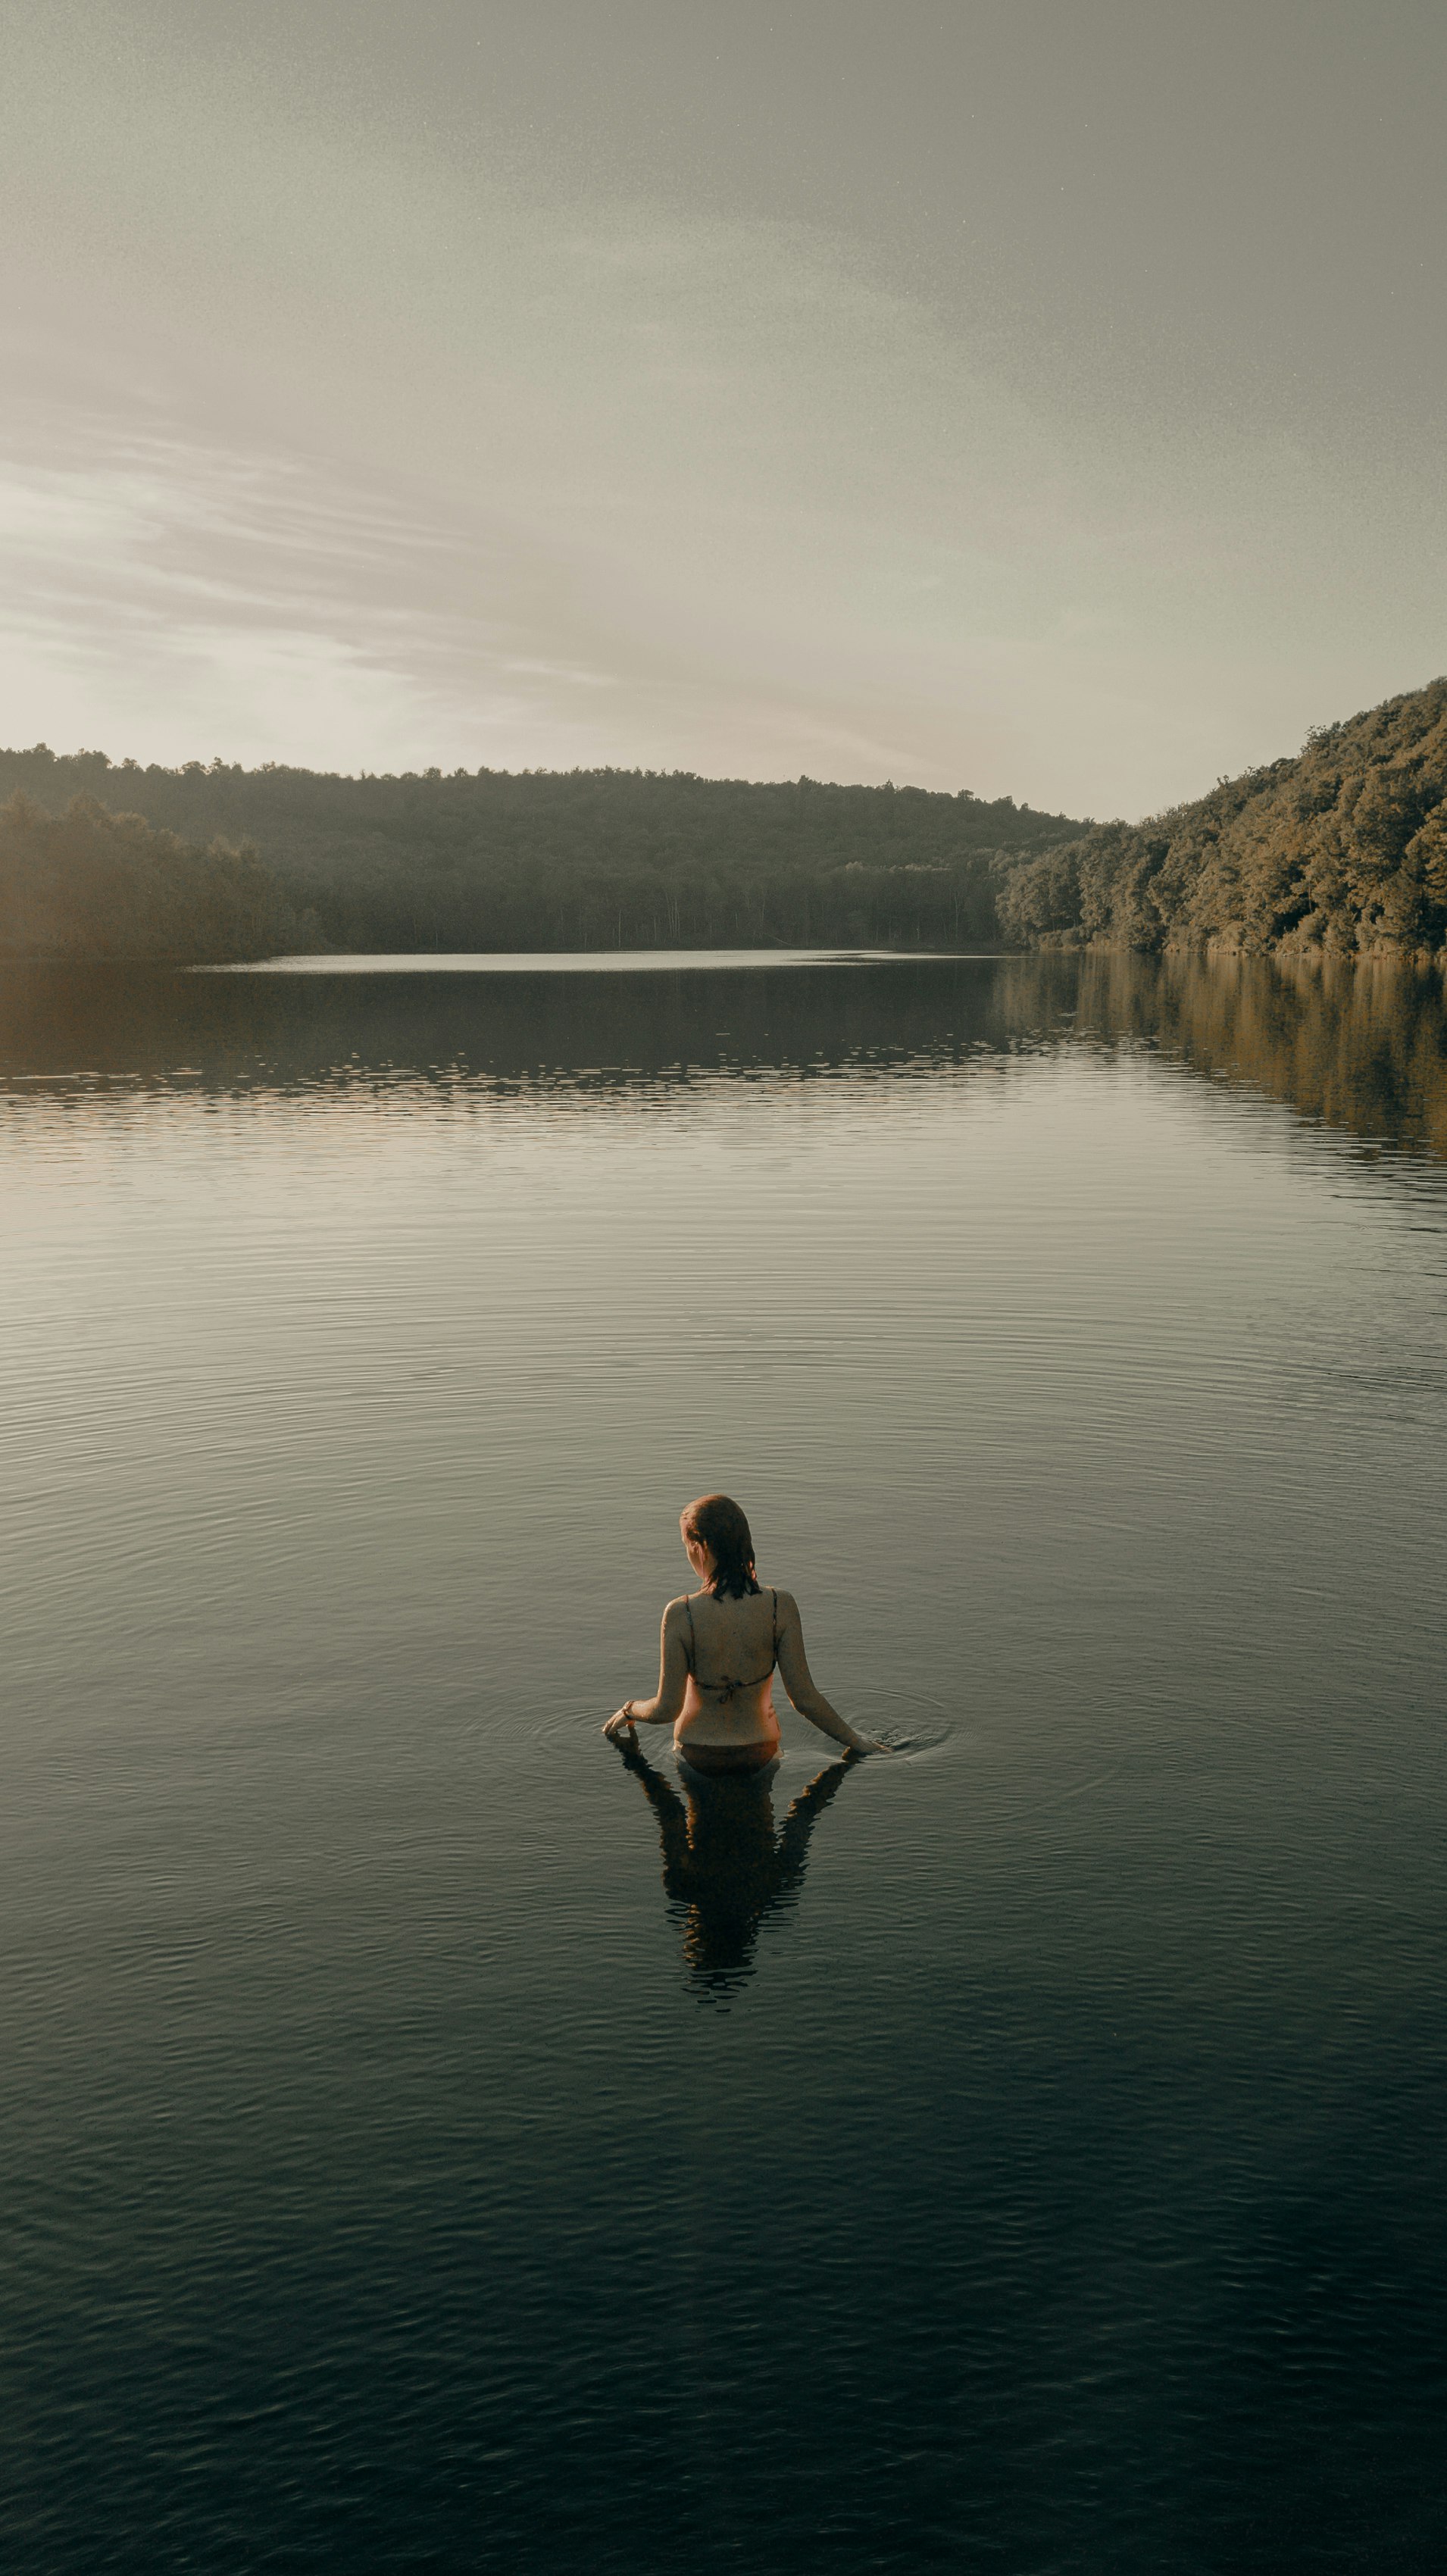 woman in black bikini sitting on rock near body of water during daytime